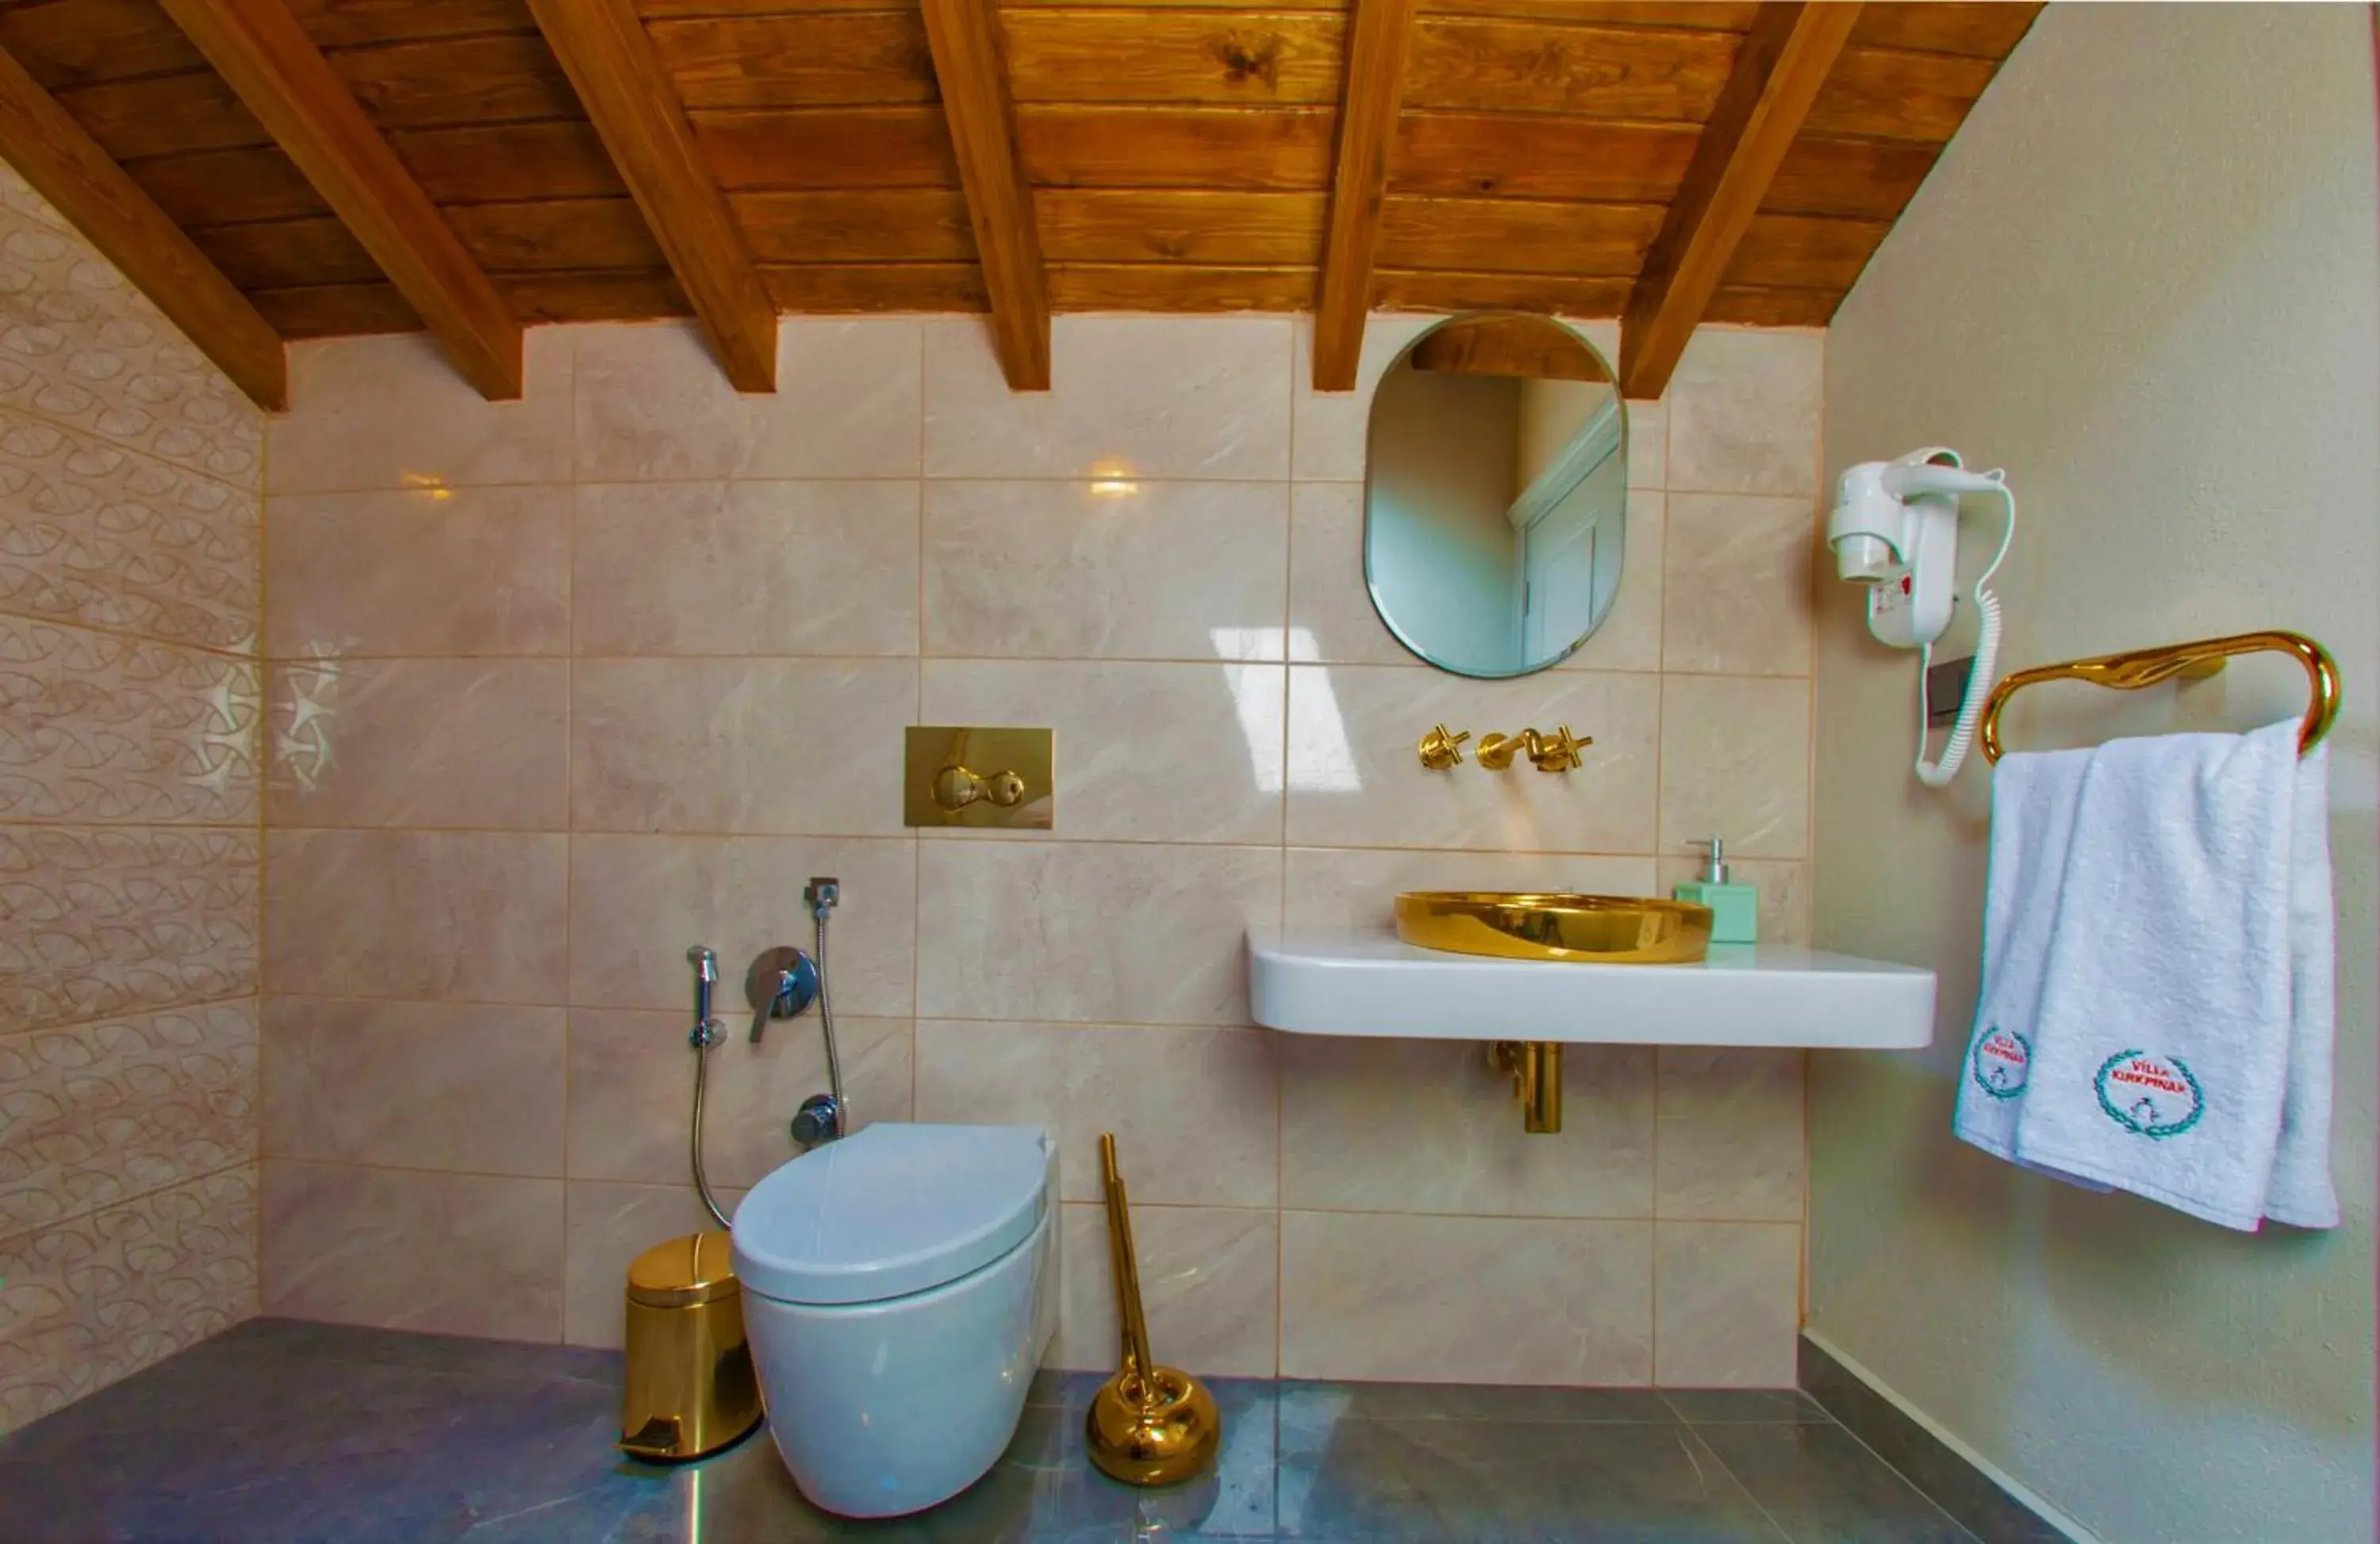 Toilet, Bathroom in Villa Kirkpinar Sapanca